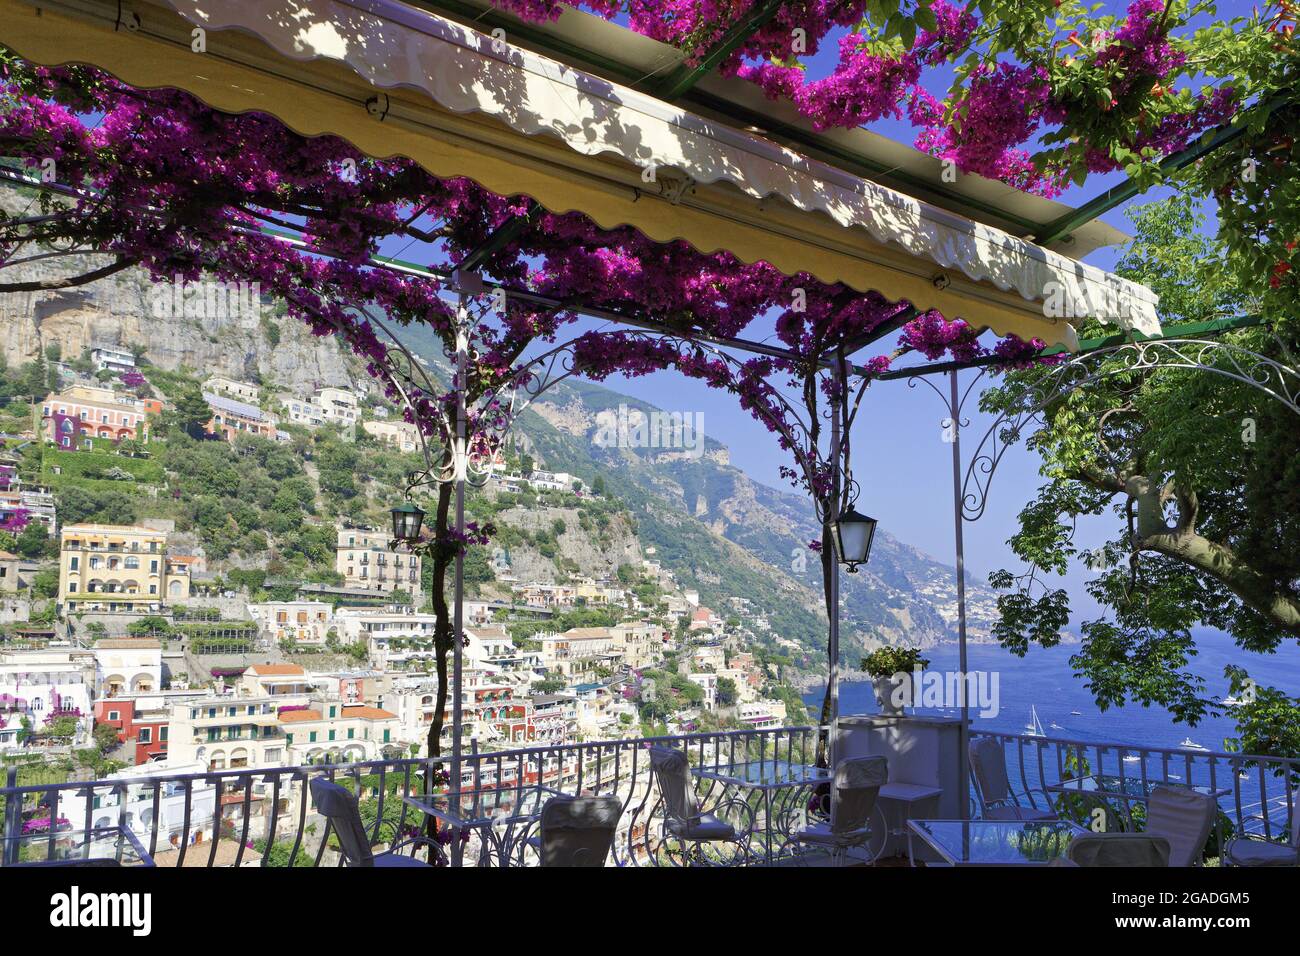 Relaxing View of Positano froma Balcony, Amalfi Coast, Campania, Italy Stock Photo